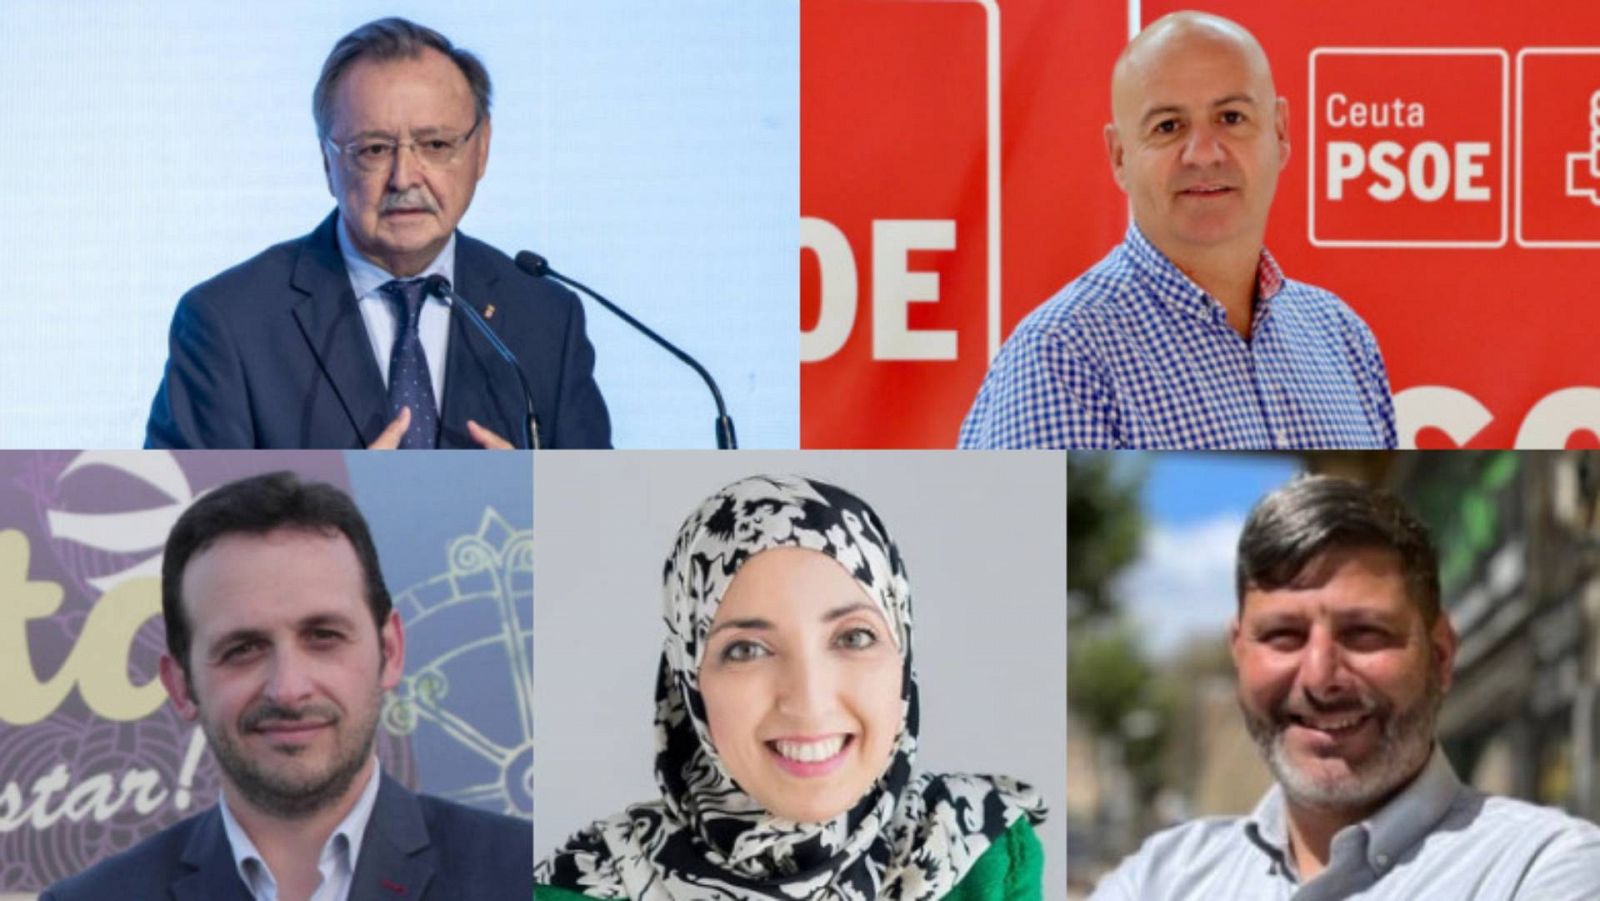 Los candidatos al 28M con representación en Ceuta